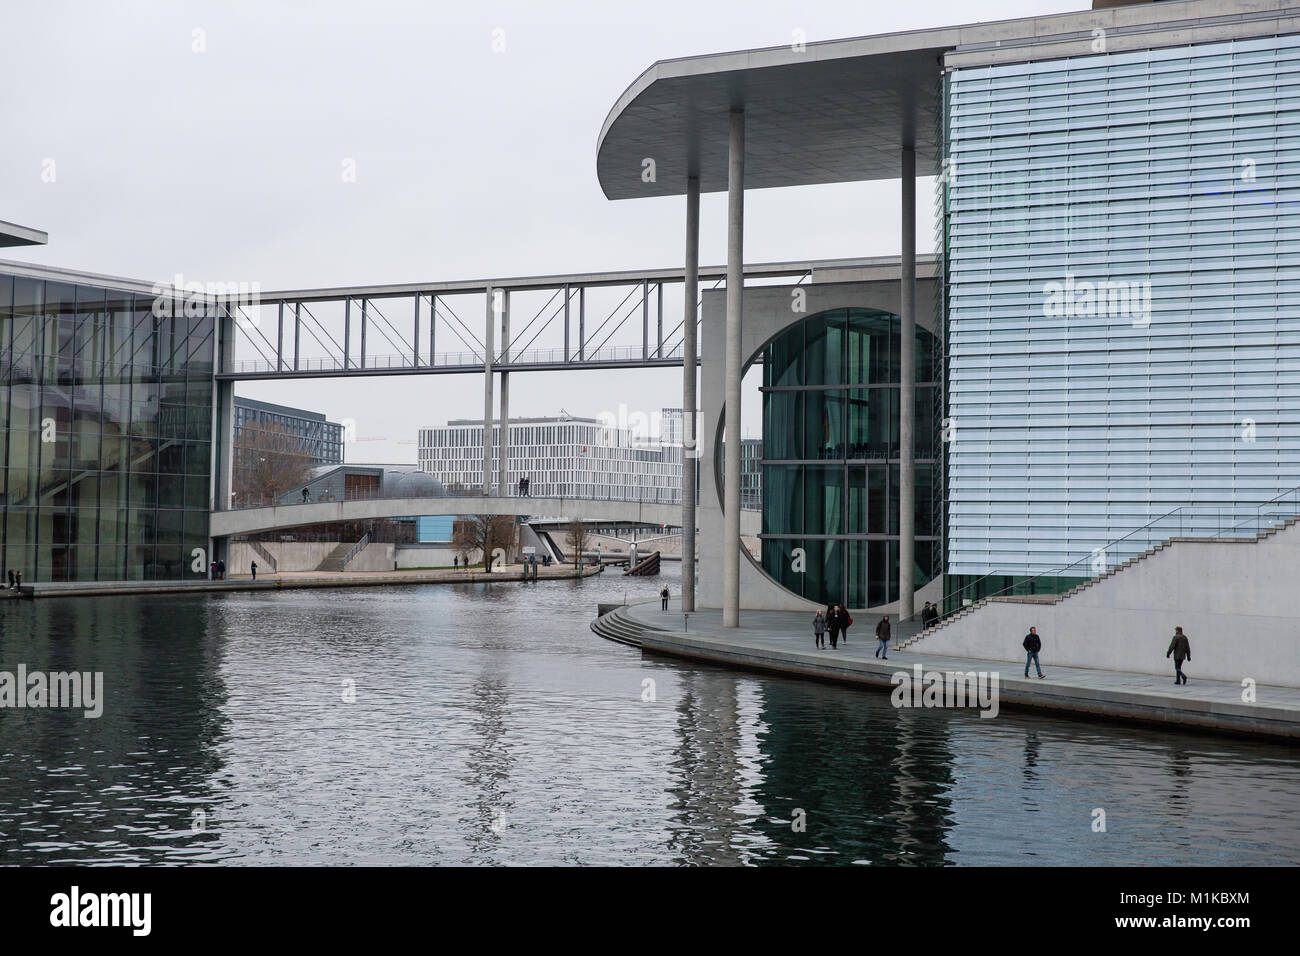 L'architecture moderne du bâtiment Chancellerie allemande symbolisant l'unité allemande situé directement sur les bords de la rivière Spree. Spreebogen, Berlin. Banque D'Images